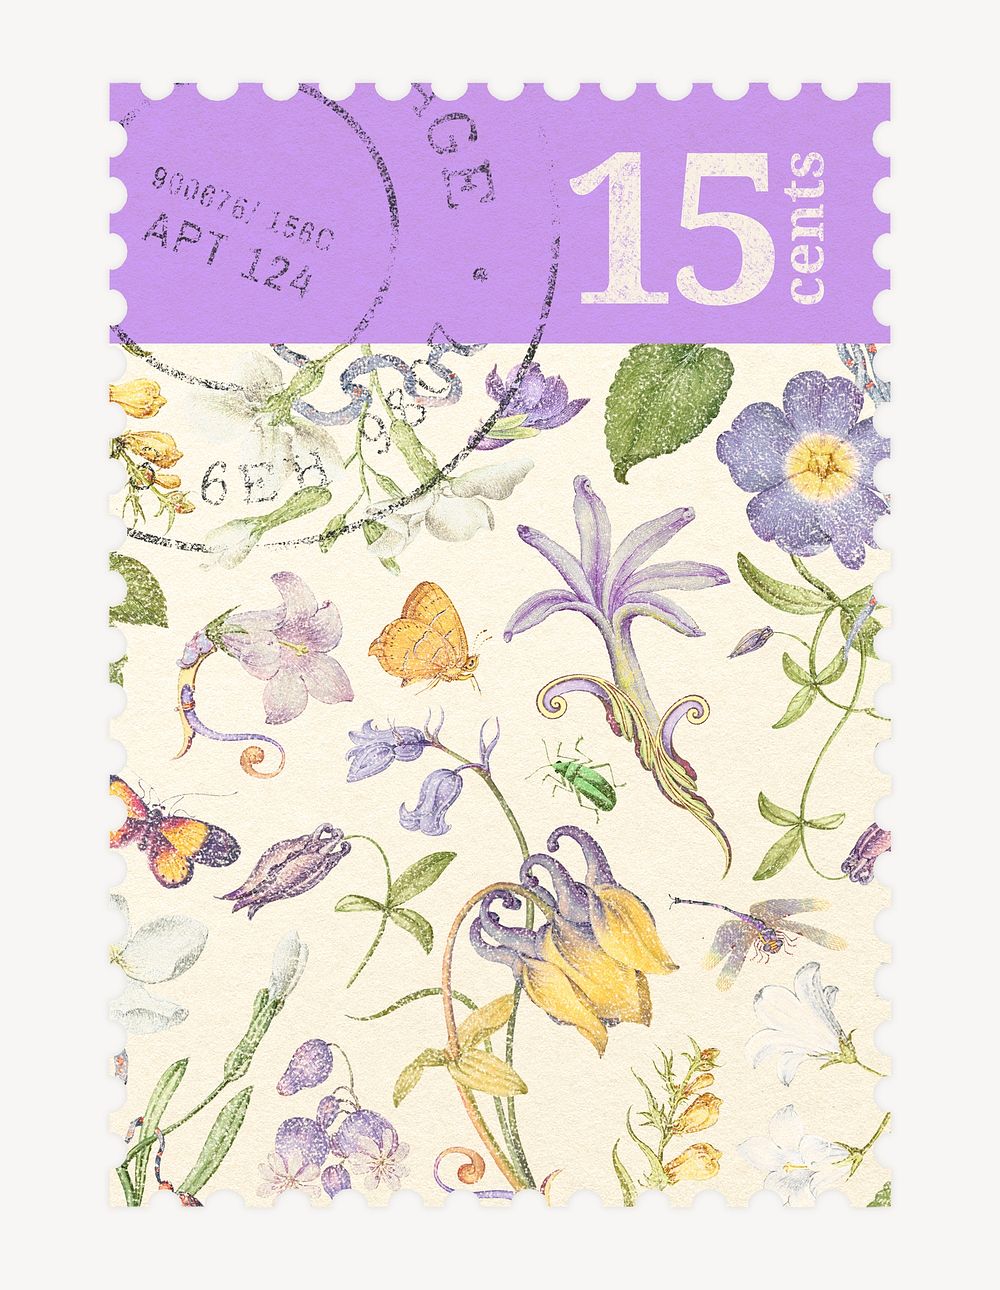 Spring flower postage stamp illustration